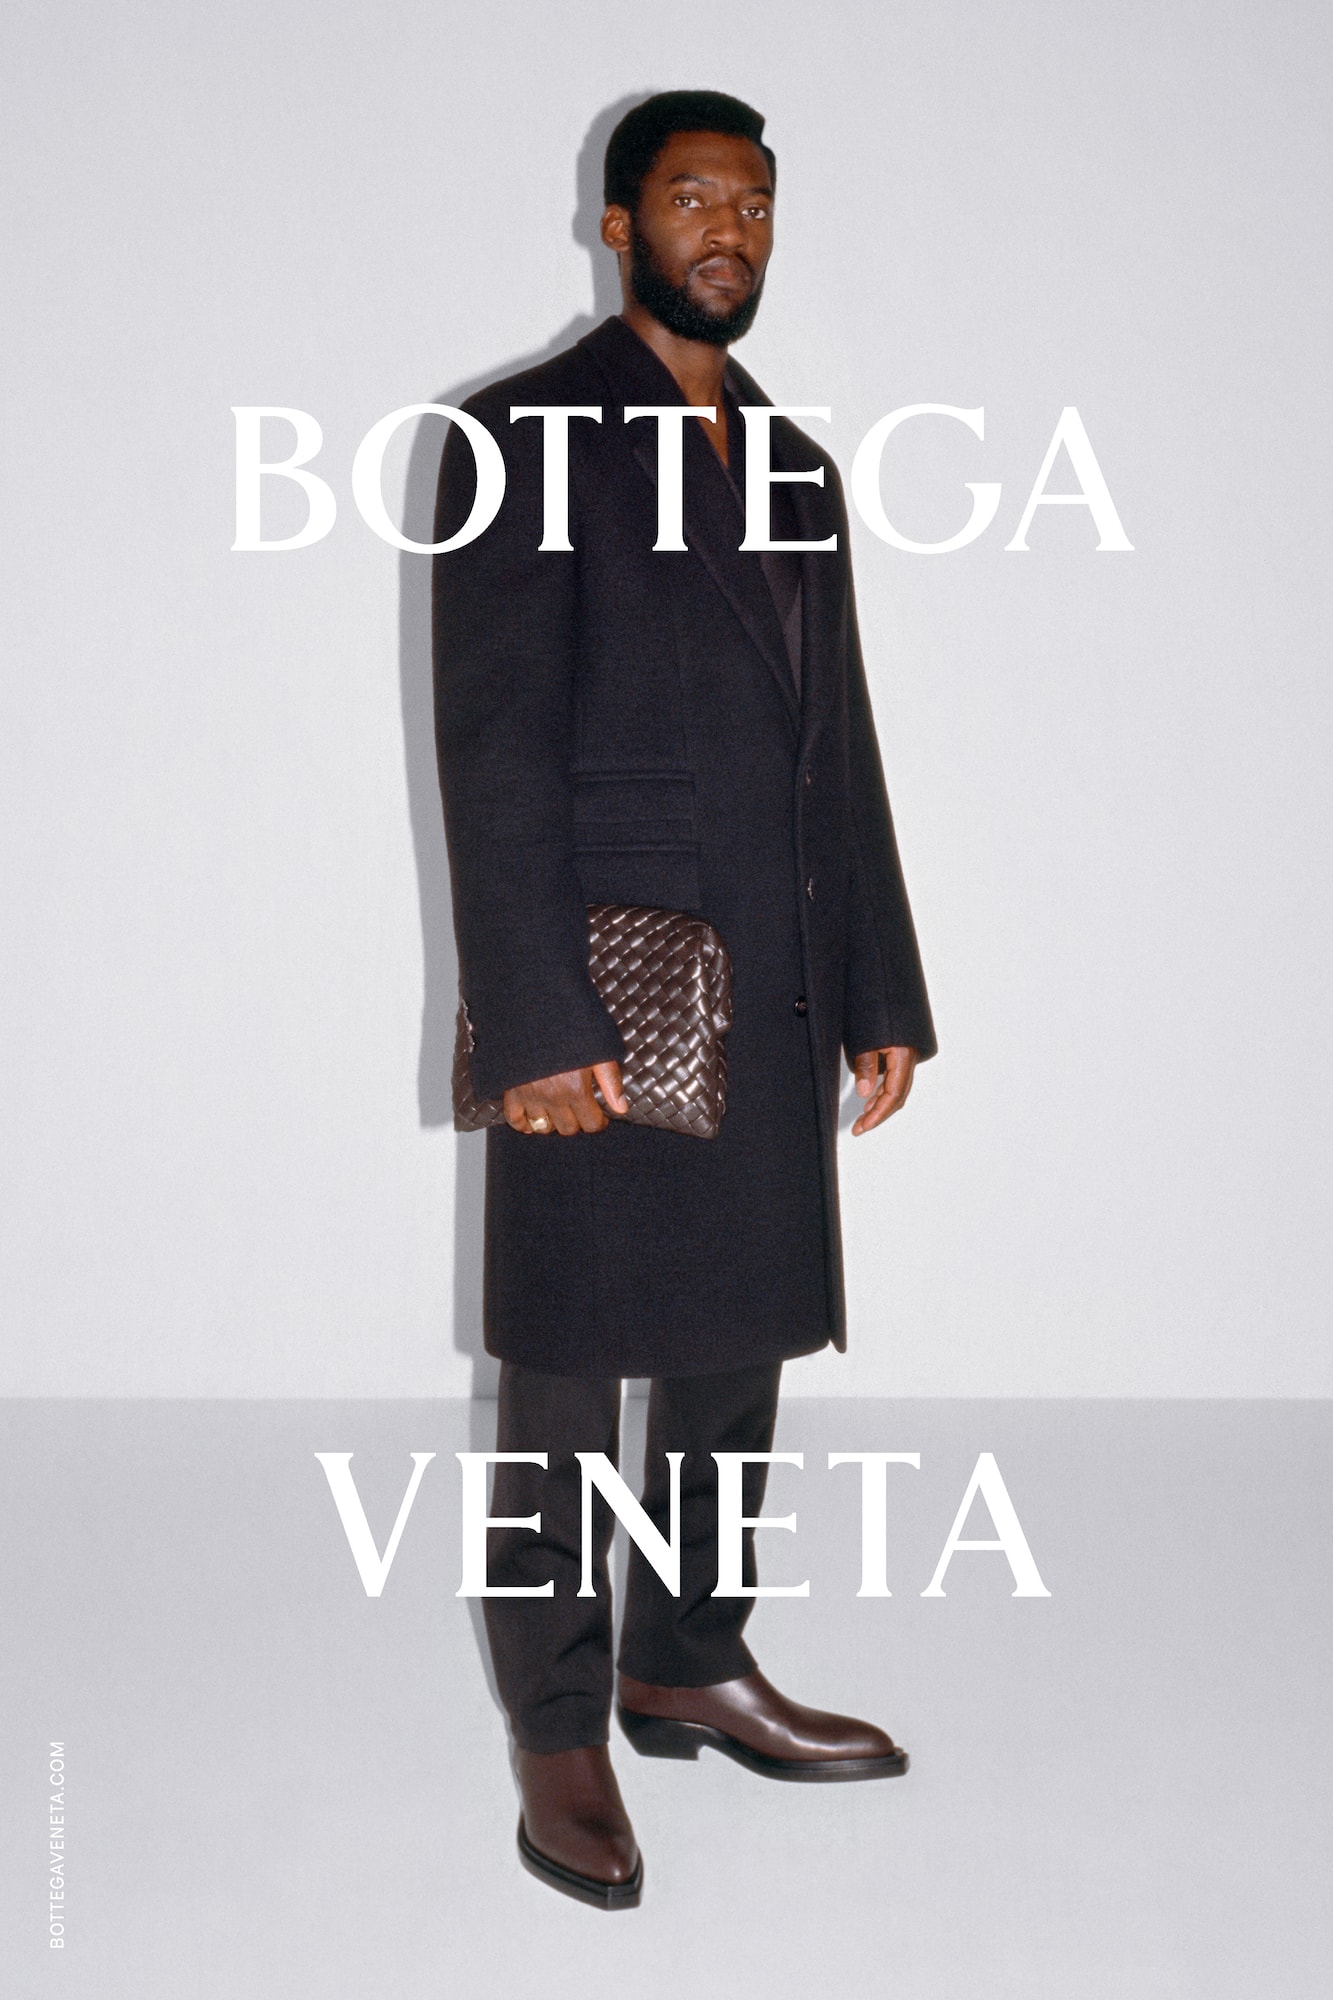 Bottega Veneta Wardrobe 02 Campaign Collection Skepta Arca Slowthai Tyrone Lebon 